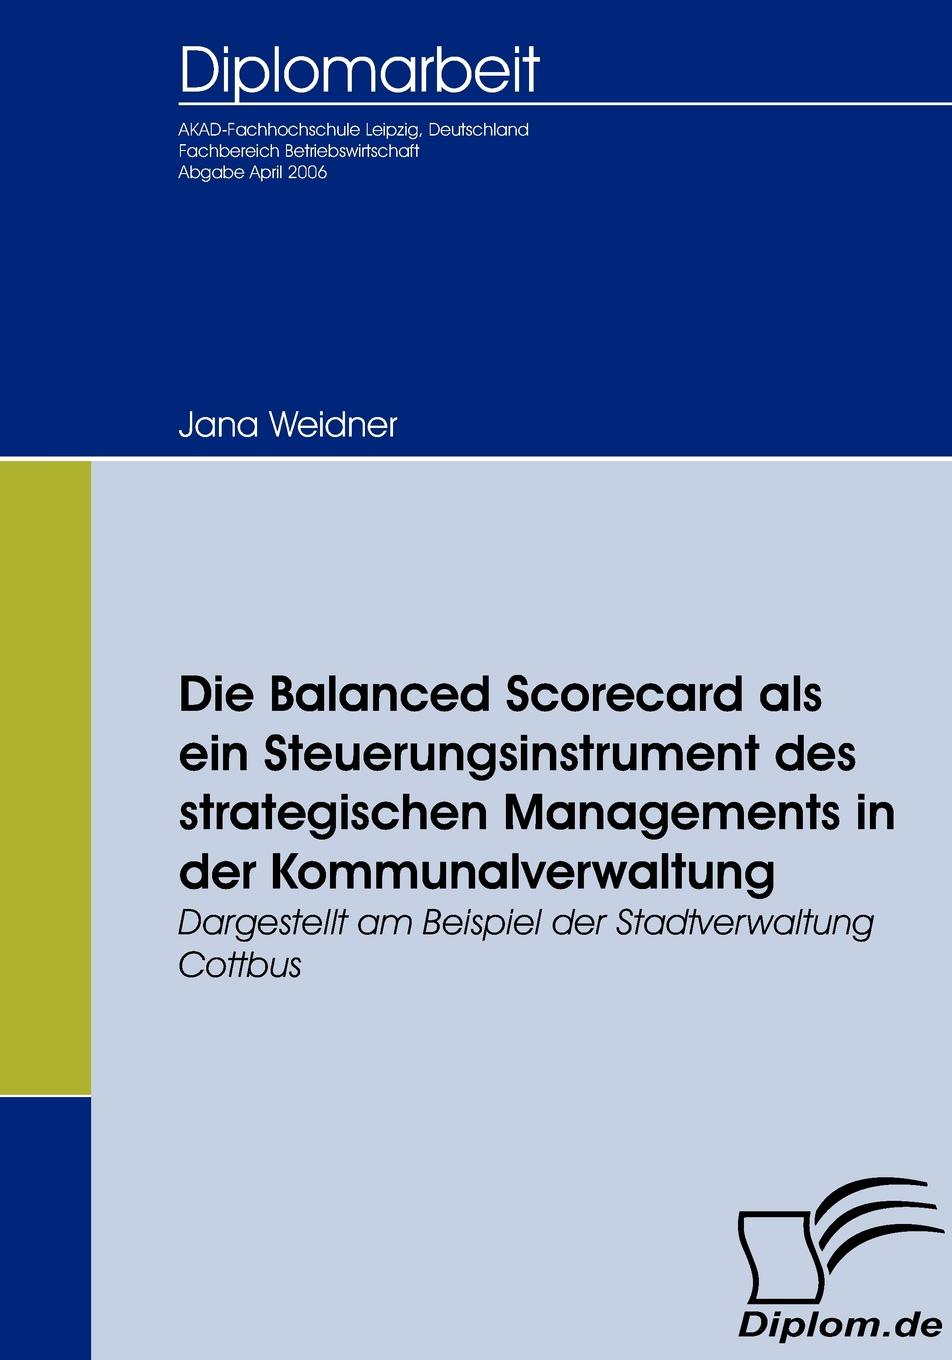 Die Balanced Scorecard als ein Steuerungsinstrument des strategischen Managements in der Kommunalverwaltung